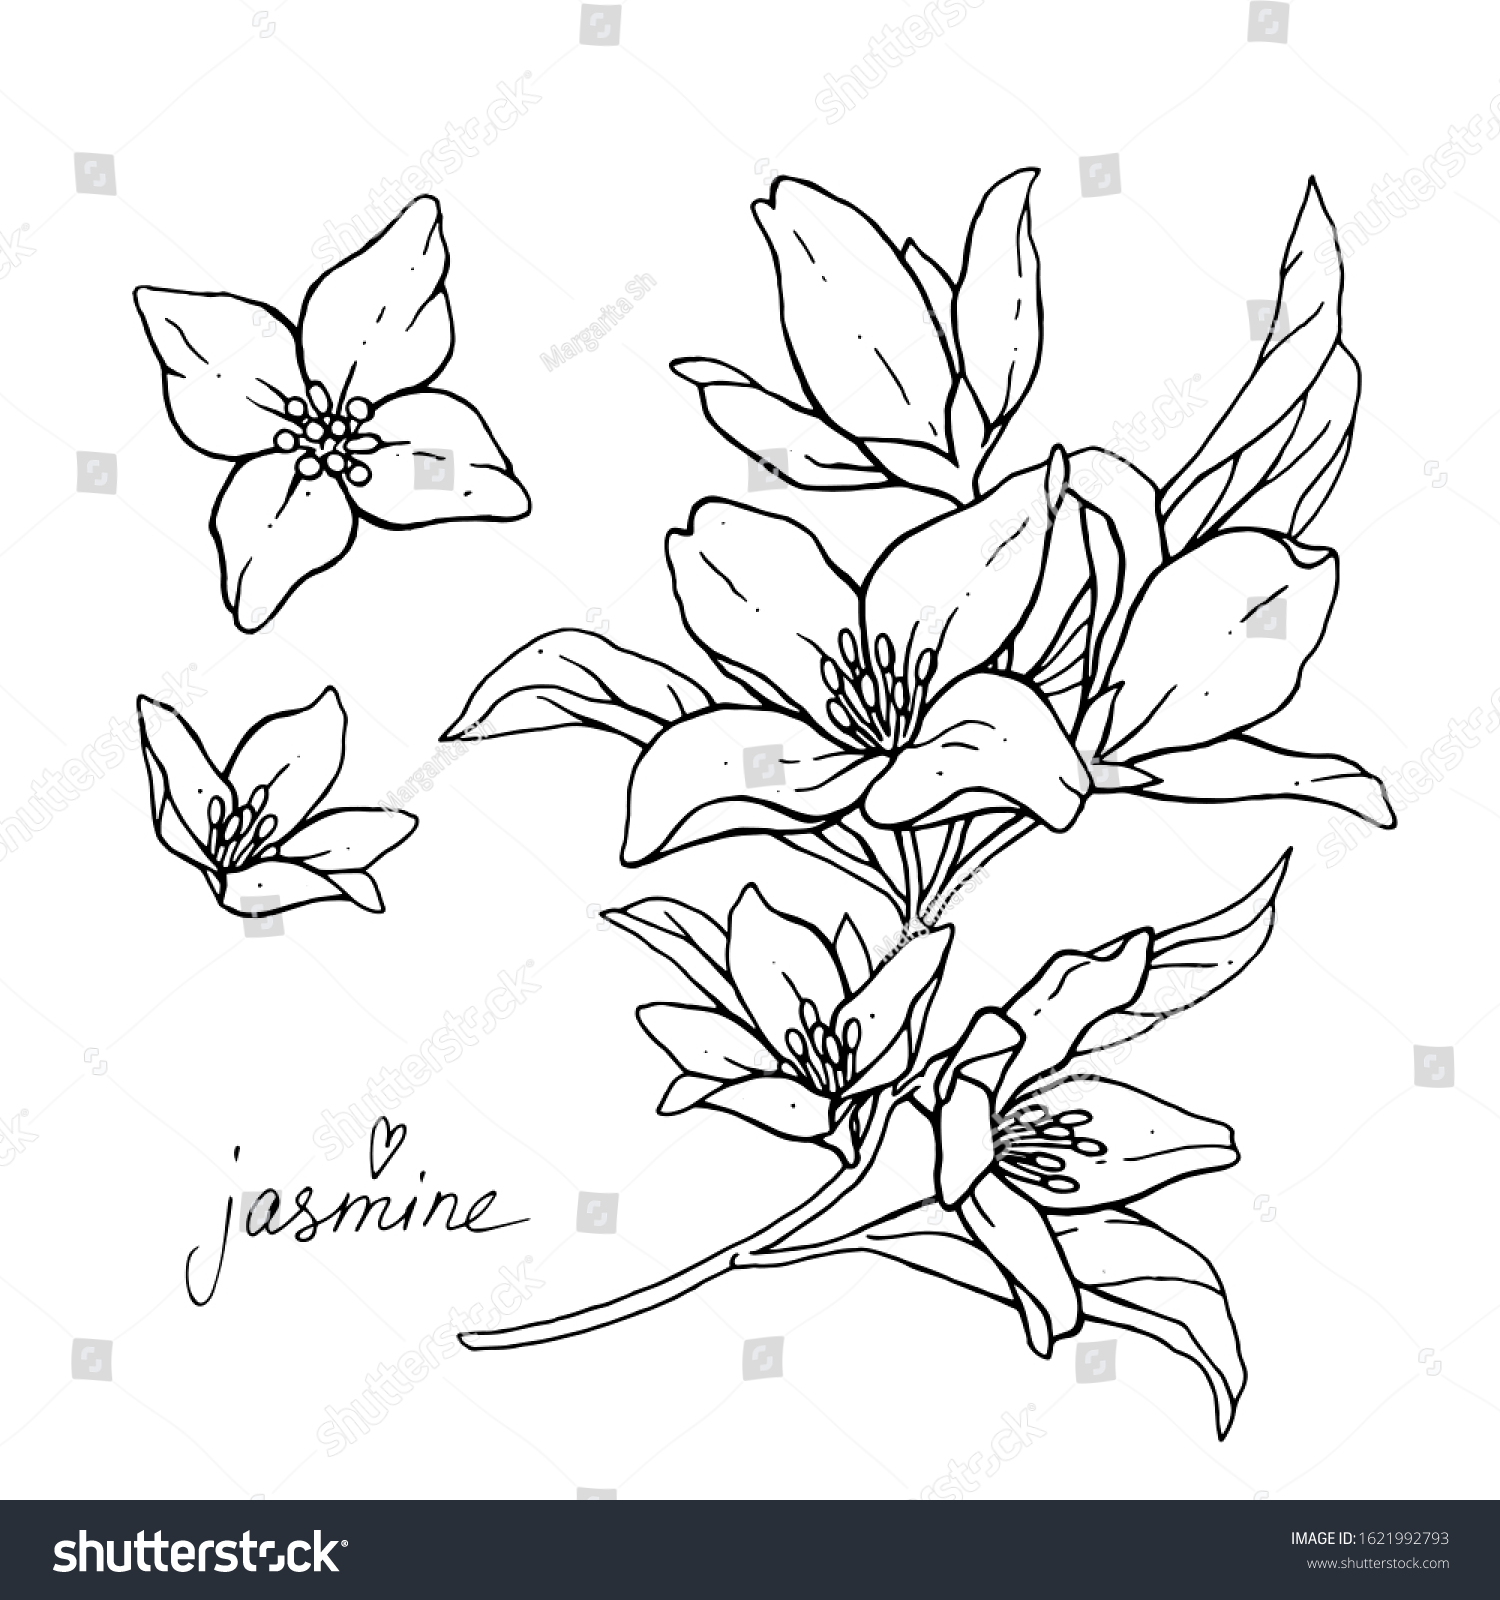 Jasmine flower sketch Images, Stock Photos & Vectors | Shutterstock